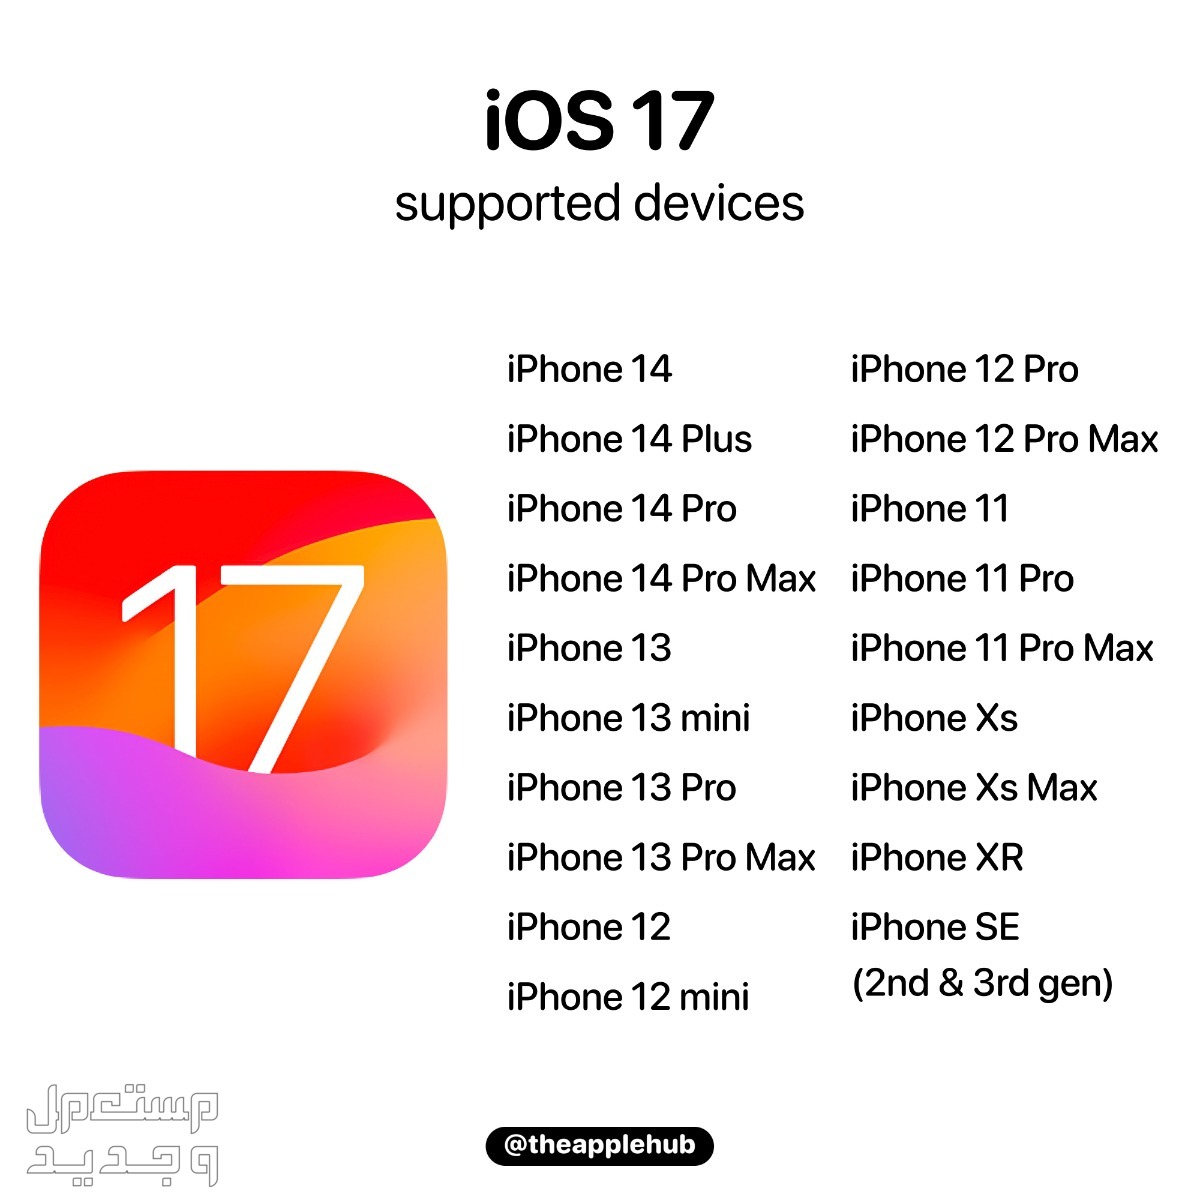 نظام iOS 17 لهواتف ايفون بمميزات جديدة تعرف عليها في جيبوتي